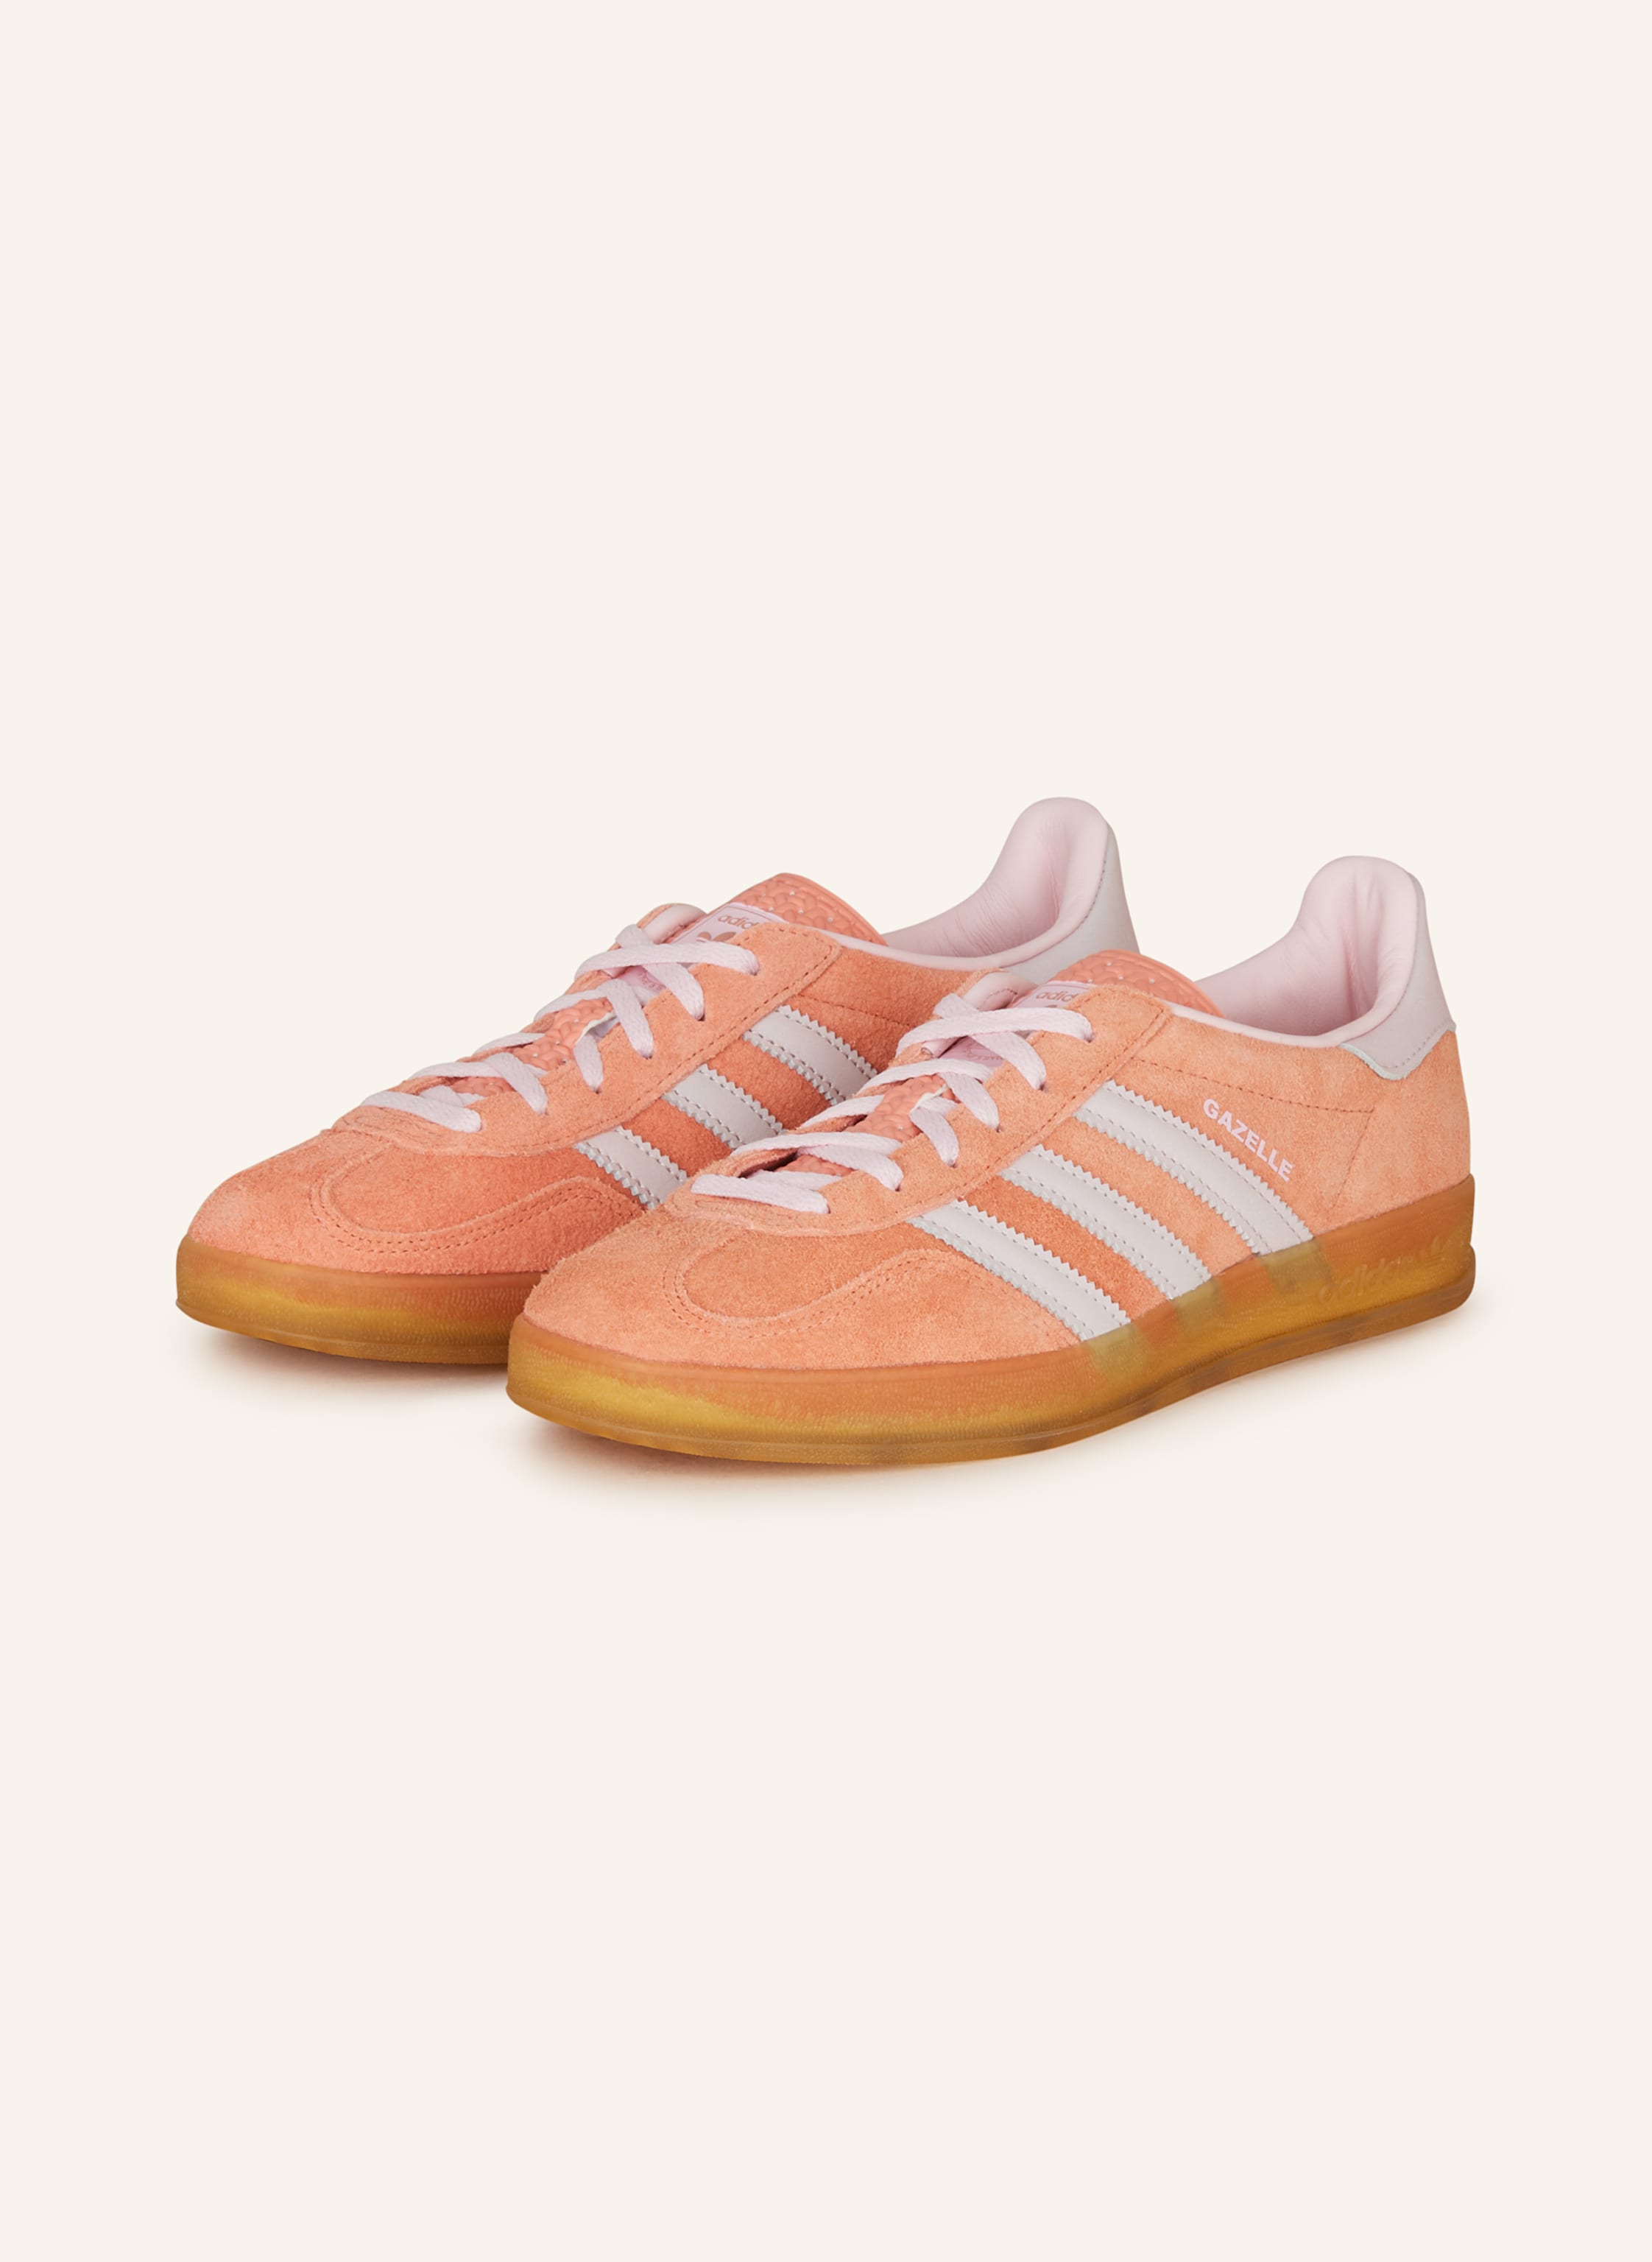 adidas Originals Sneaker rosa/ in INDOOR orange/ GAZELLE helllila